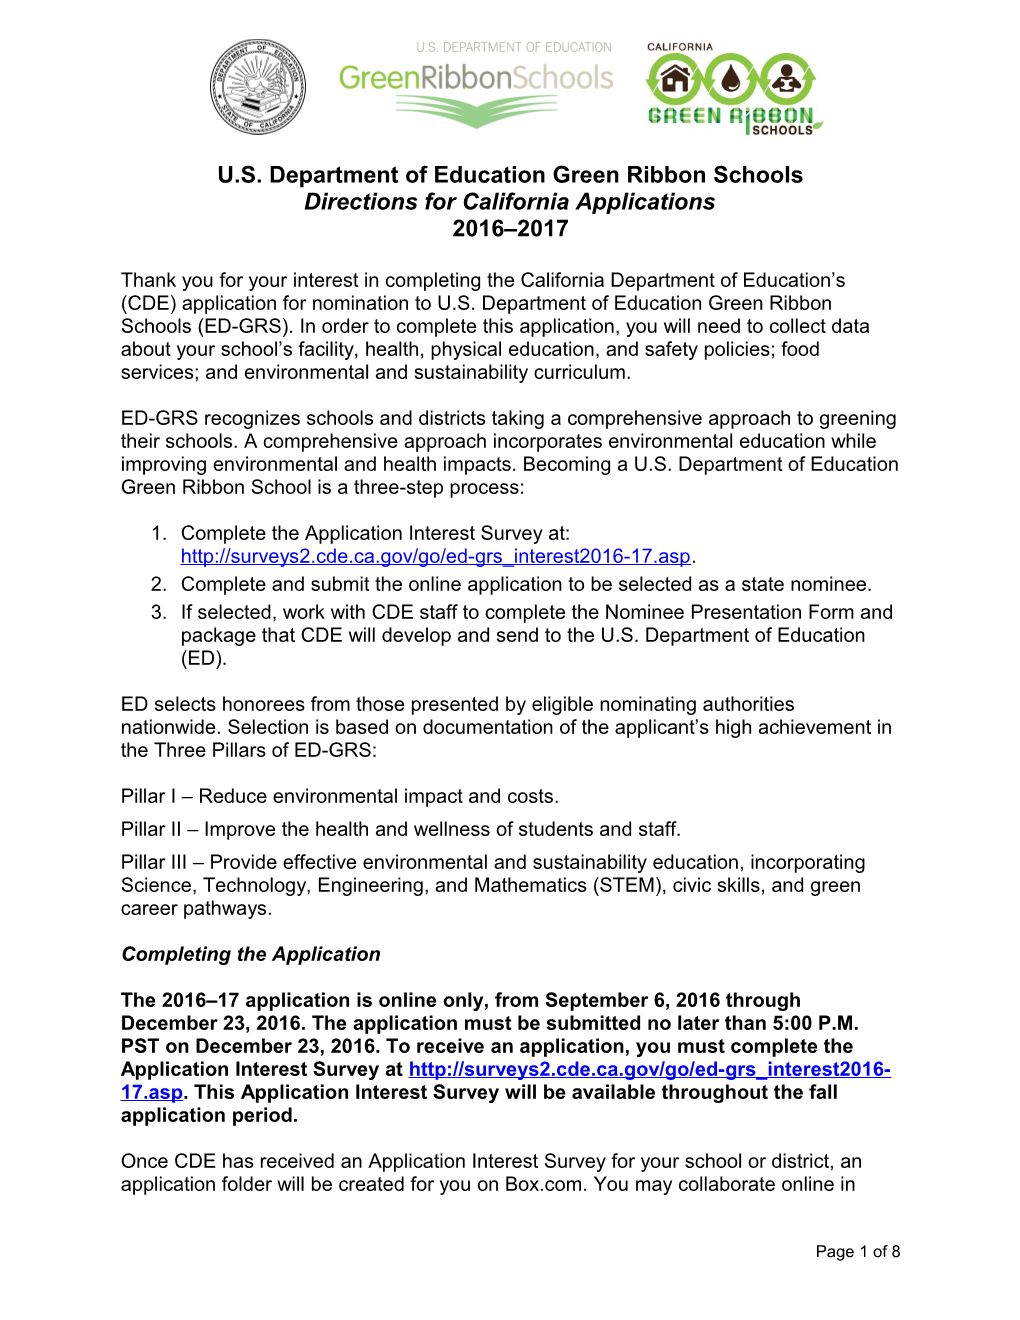 Green Ribbon Schools - School Facilities (CA Dept of Education)